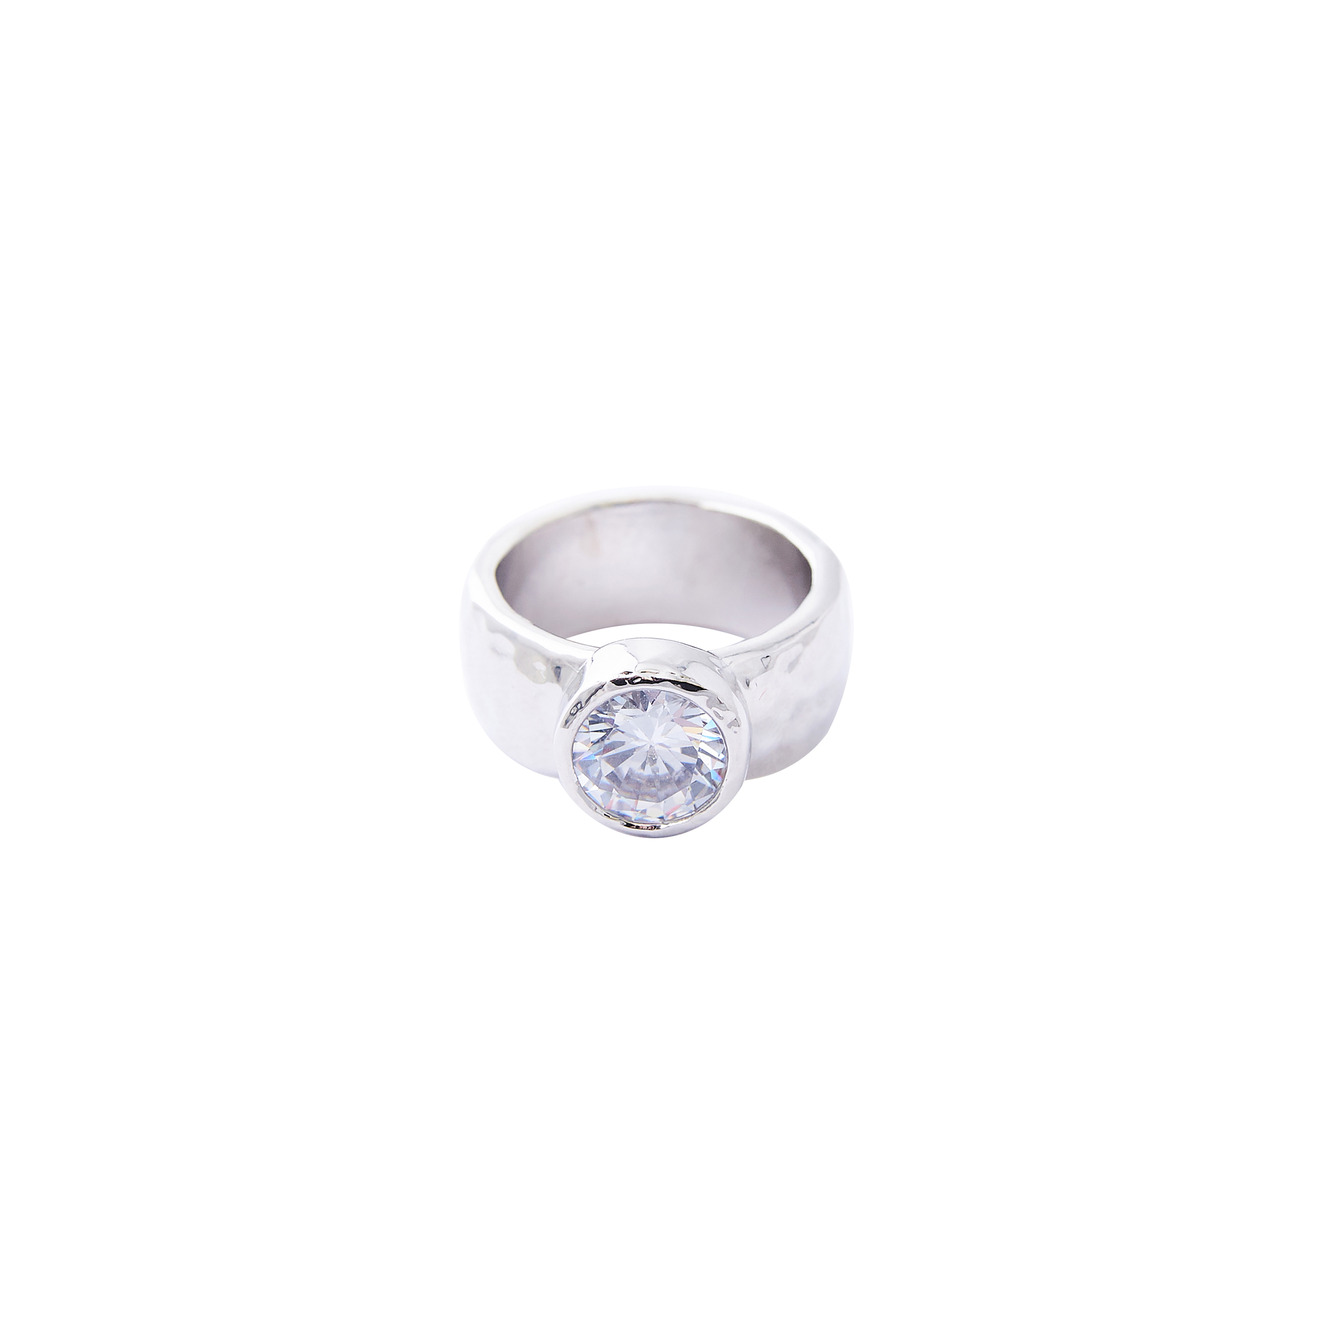 Herald Percy Серебристое высокое кольцо с крупным кристаллом herald percy серебристое фигурное кольцо с зеленым сердцем